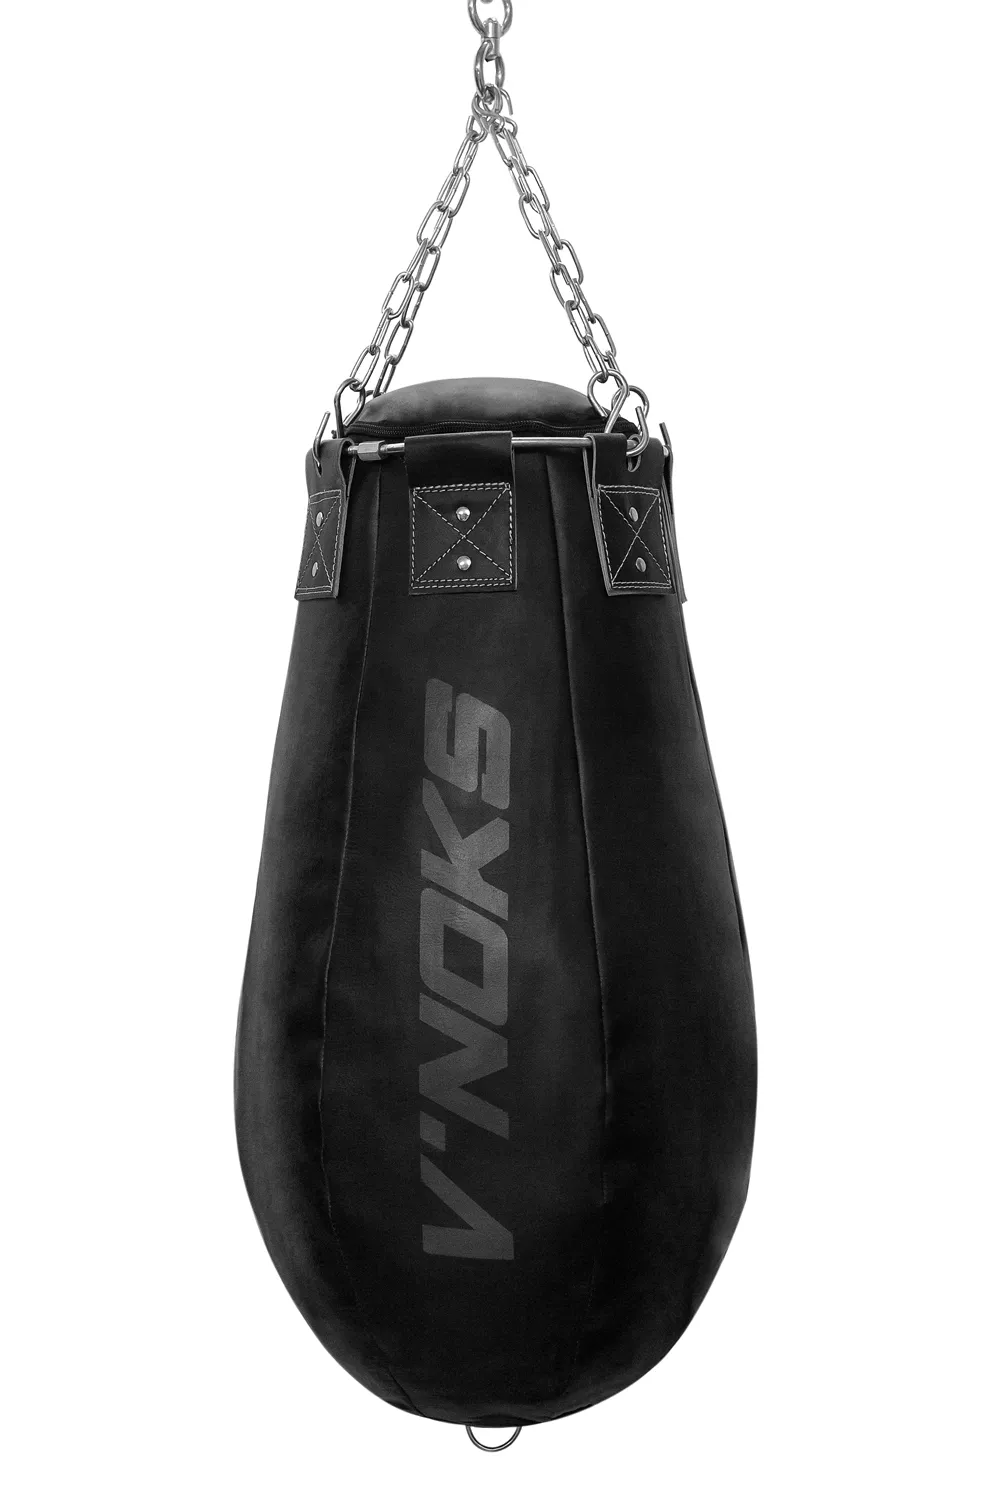 Боксерская груша апперкотная V`Noks Fortes Black 45-55 кг, 95см